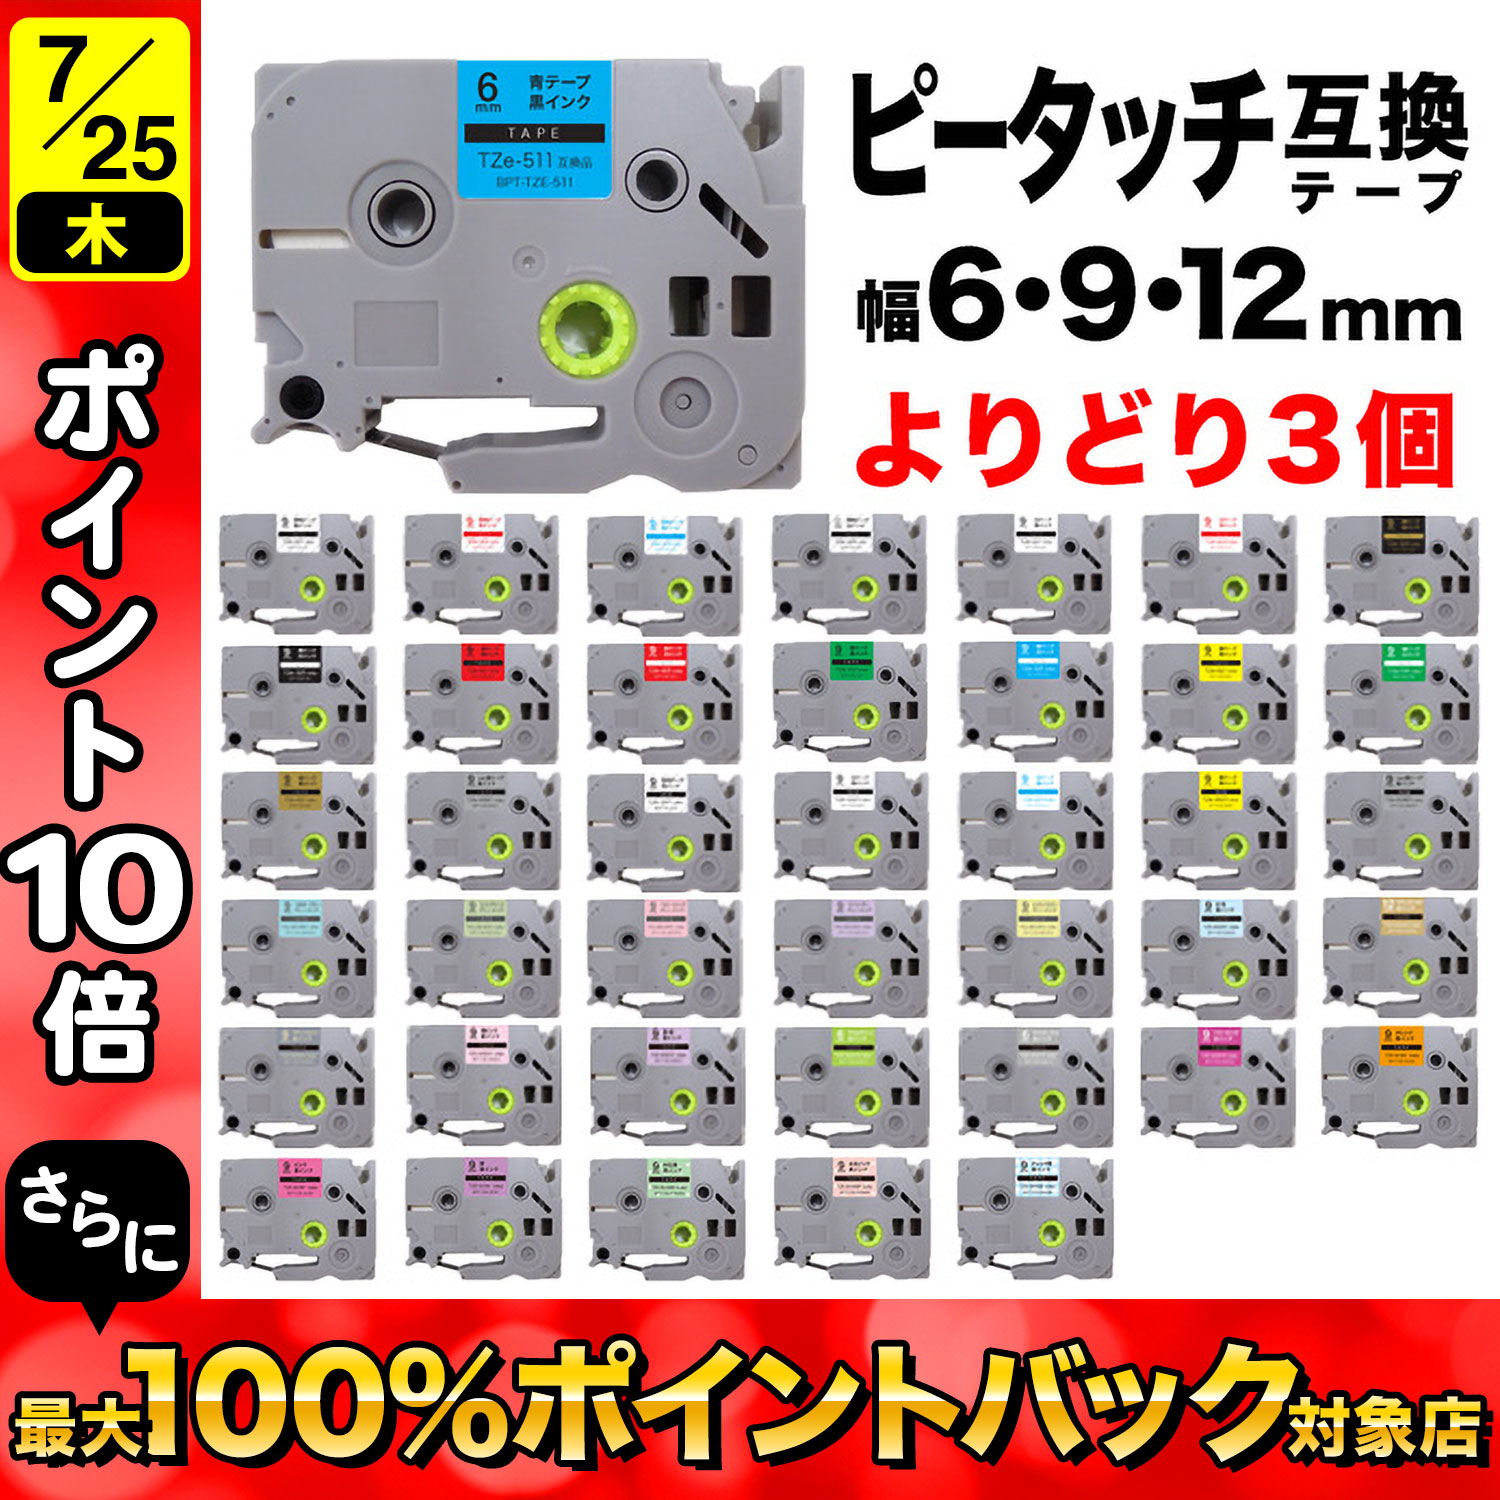 ブラザー用 ピータッチ 互換 テープ 6・9・12mm フリーチョイス(自由選択) 全41色 ピータッチキューブ対応 色が選べる3個セット